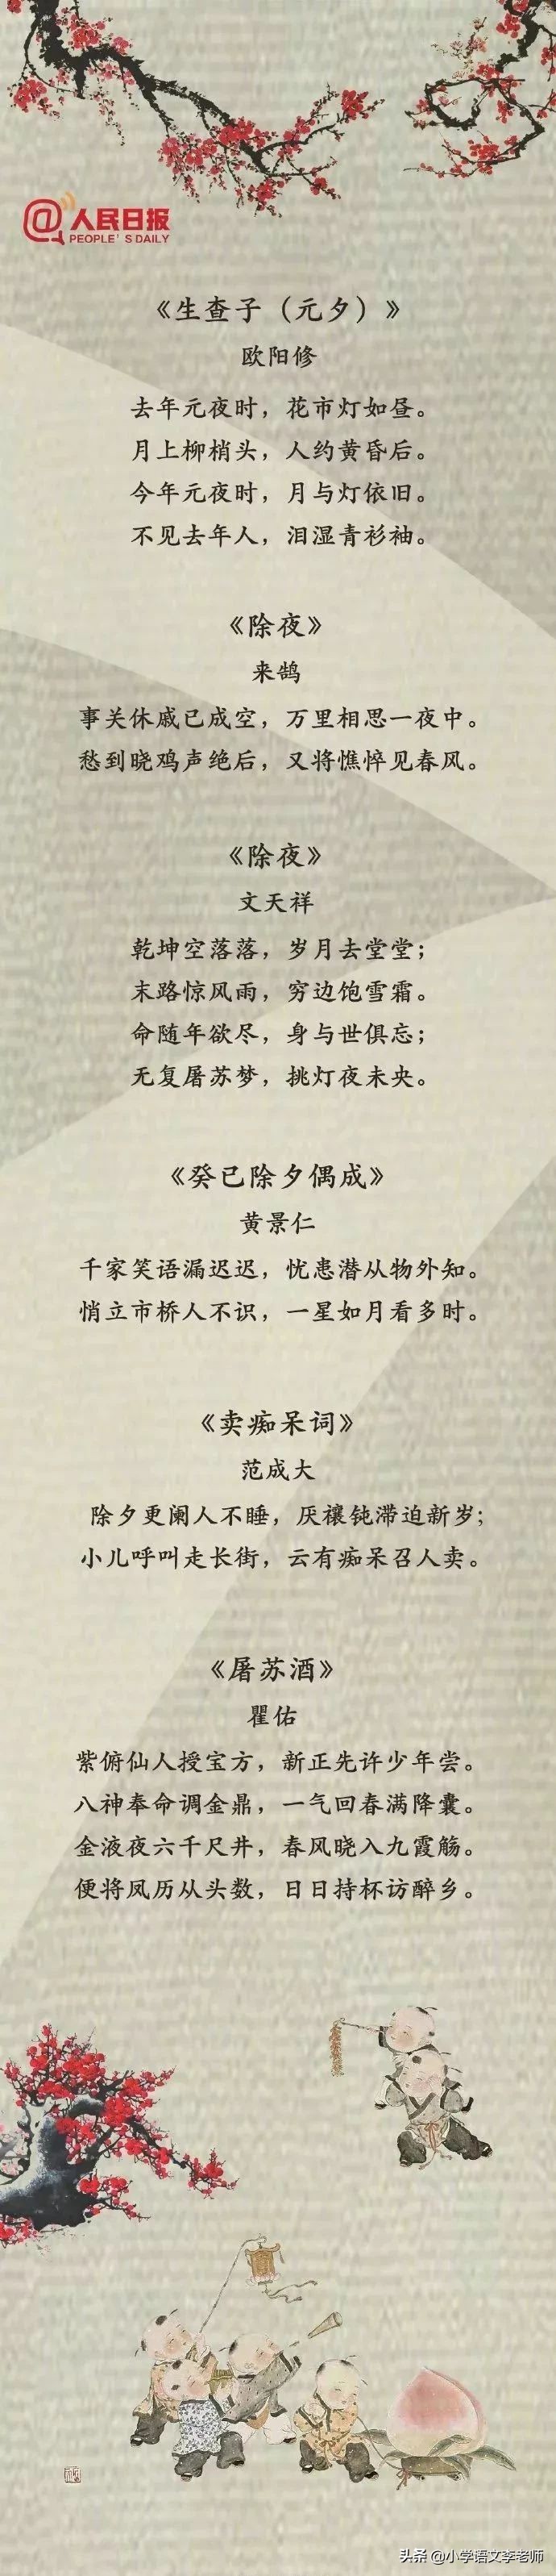 描写春节的诗歌图片